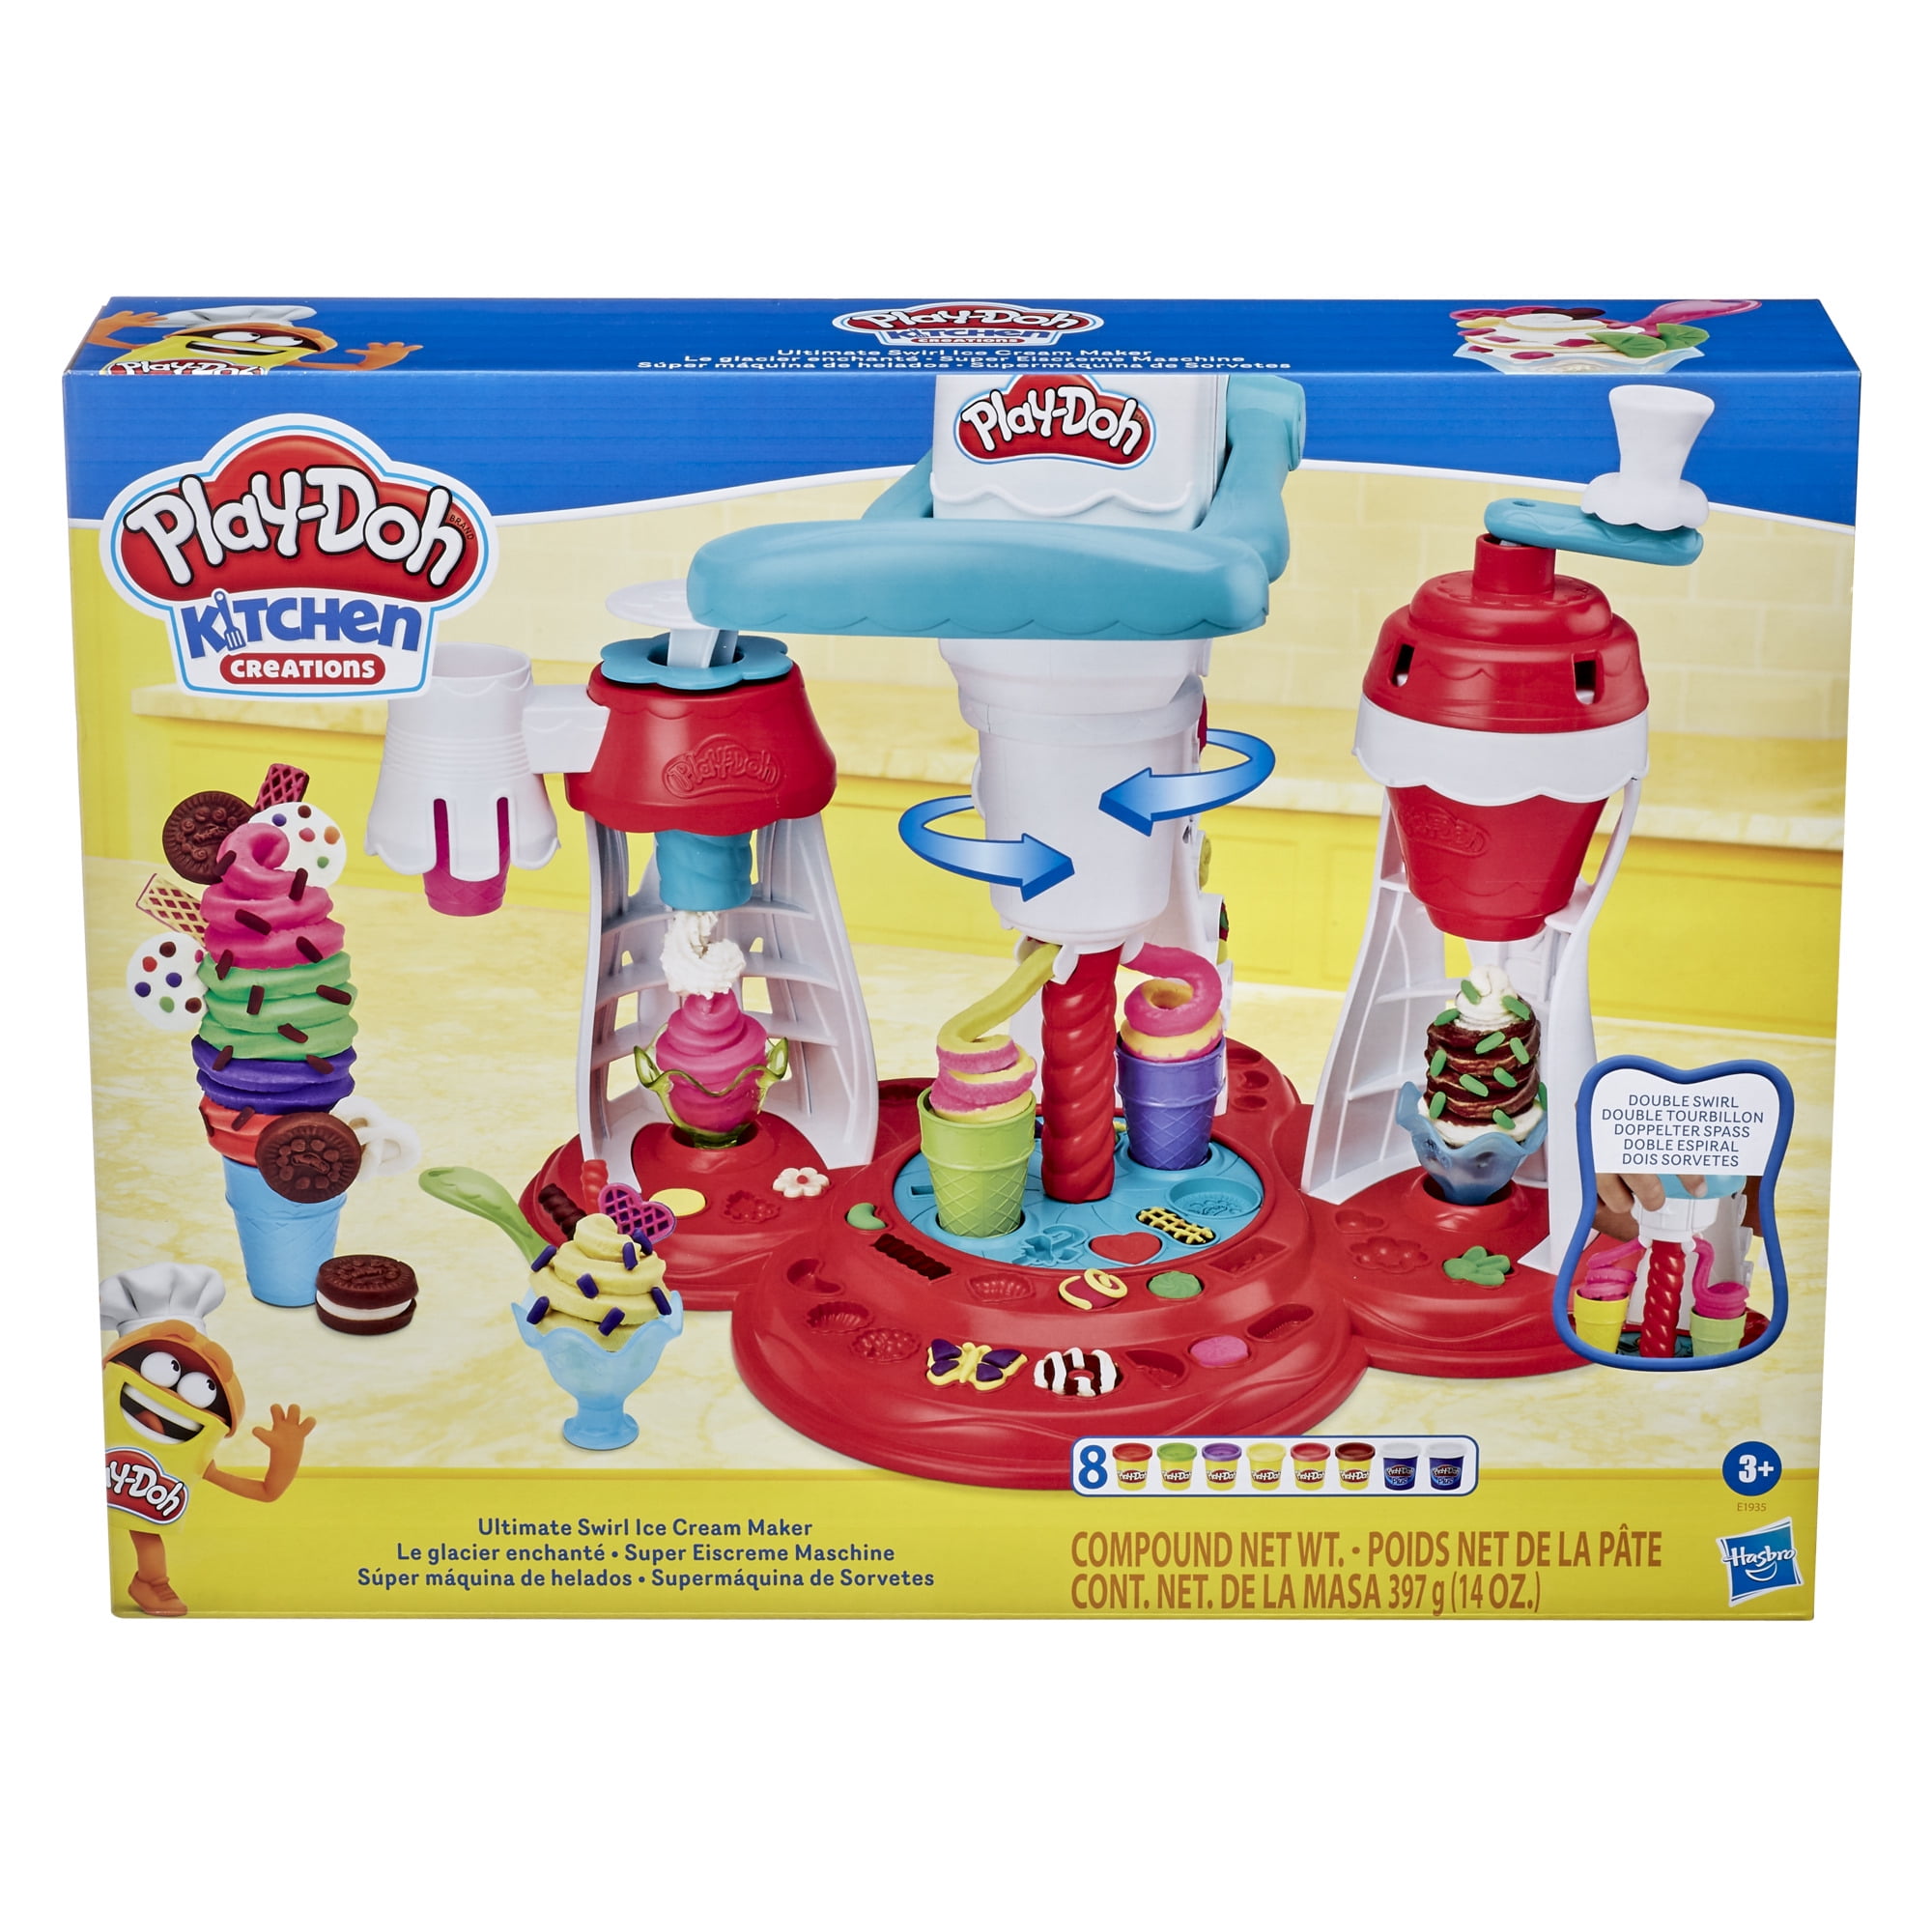 Play-doh Kitchen Creations Ultimate Swirl Hielo Cream Maker E1935 Nuevo 